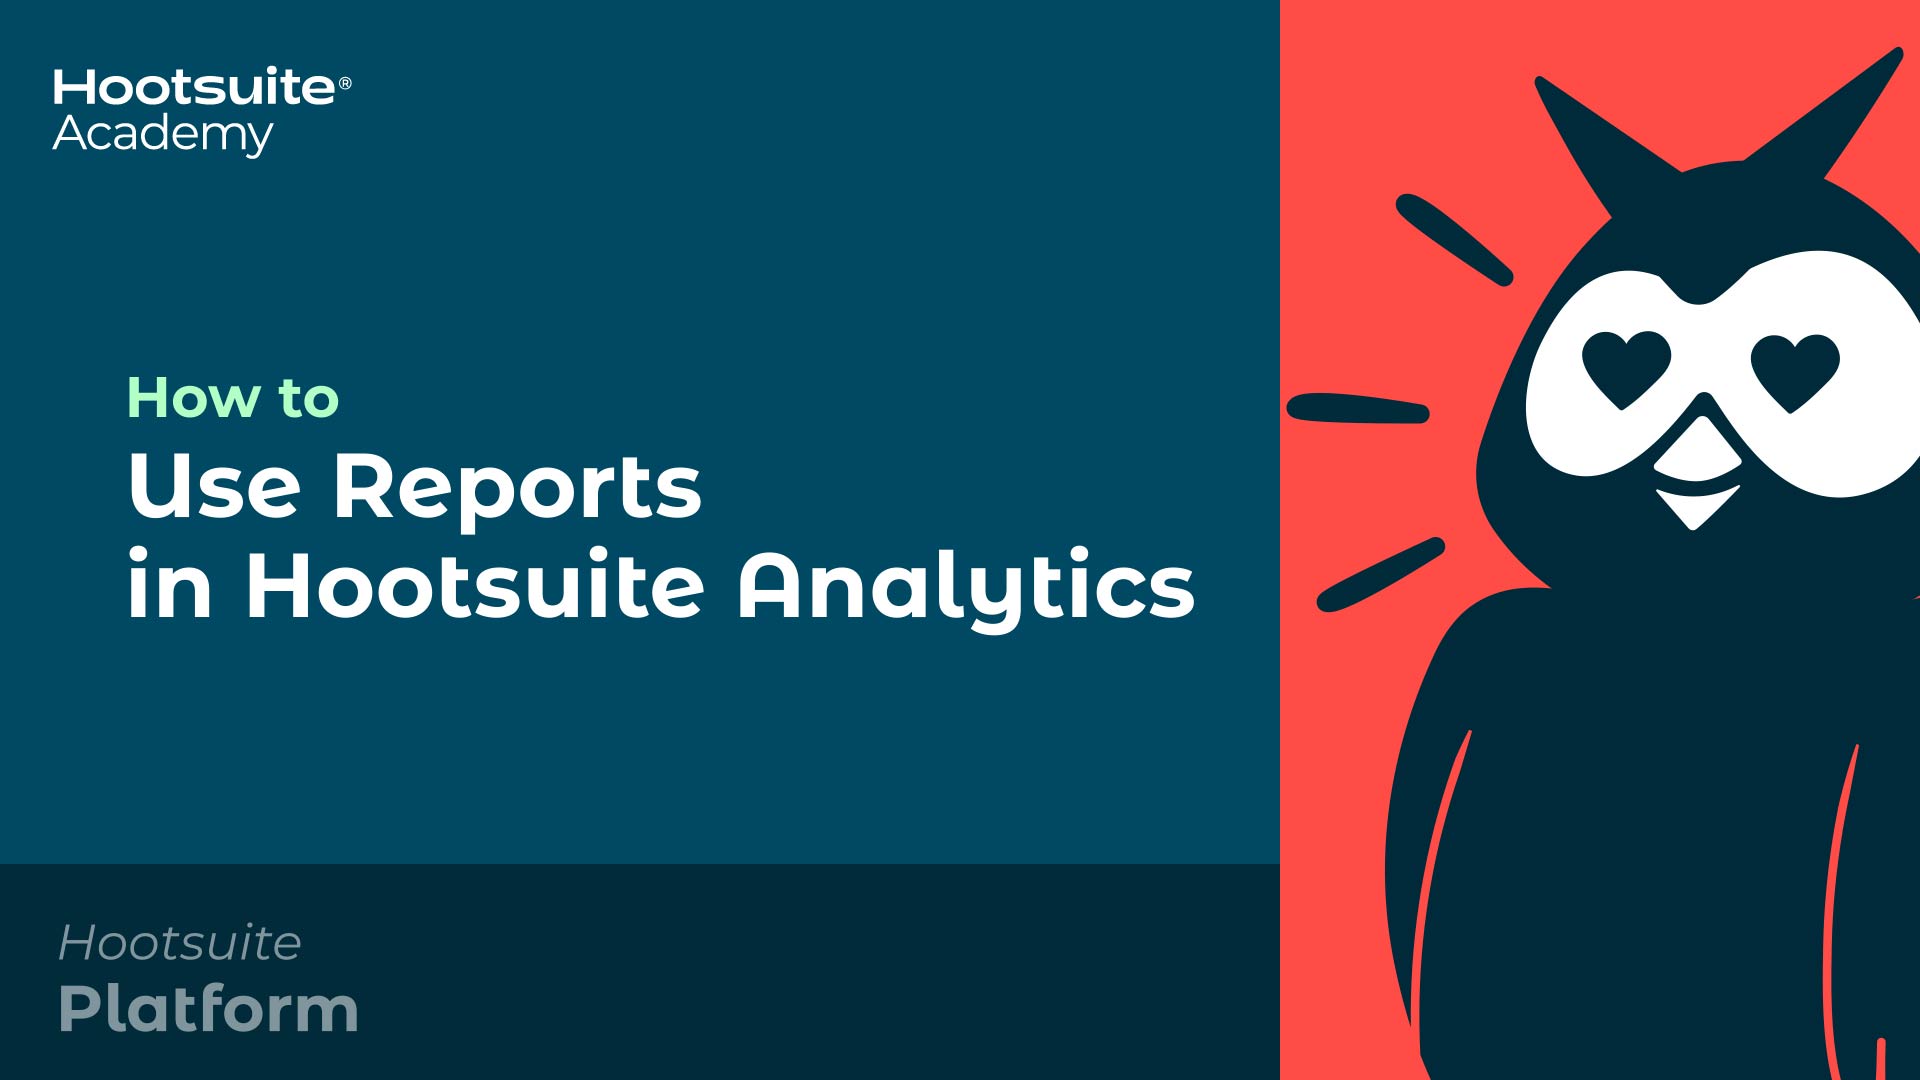 Vídeo sobre cómo utilizar los informes en Hootsuite Analytics